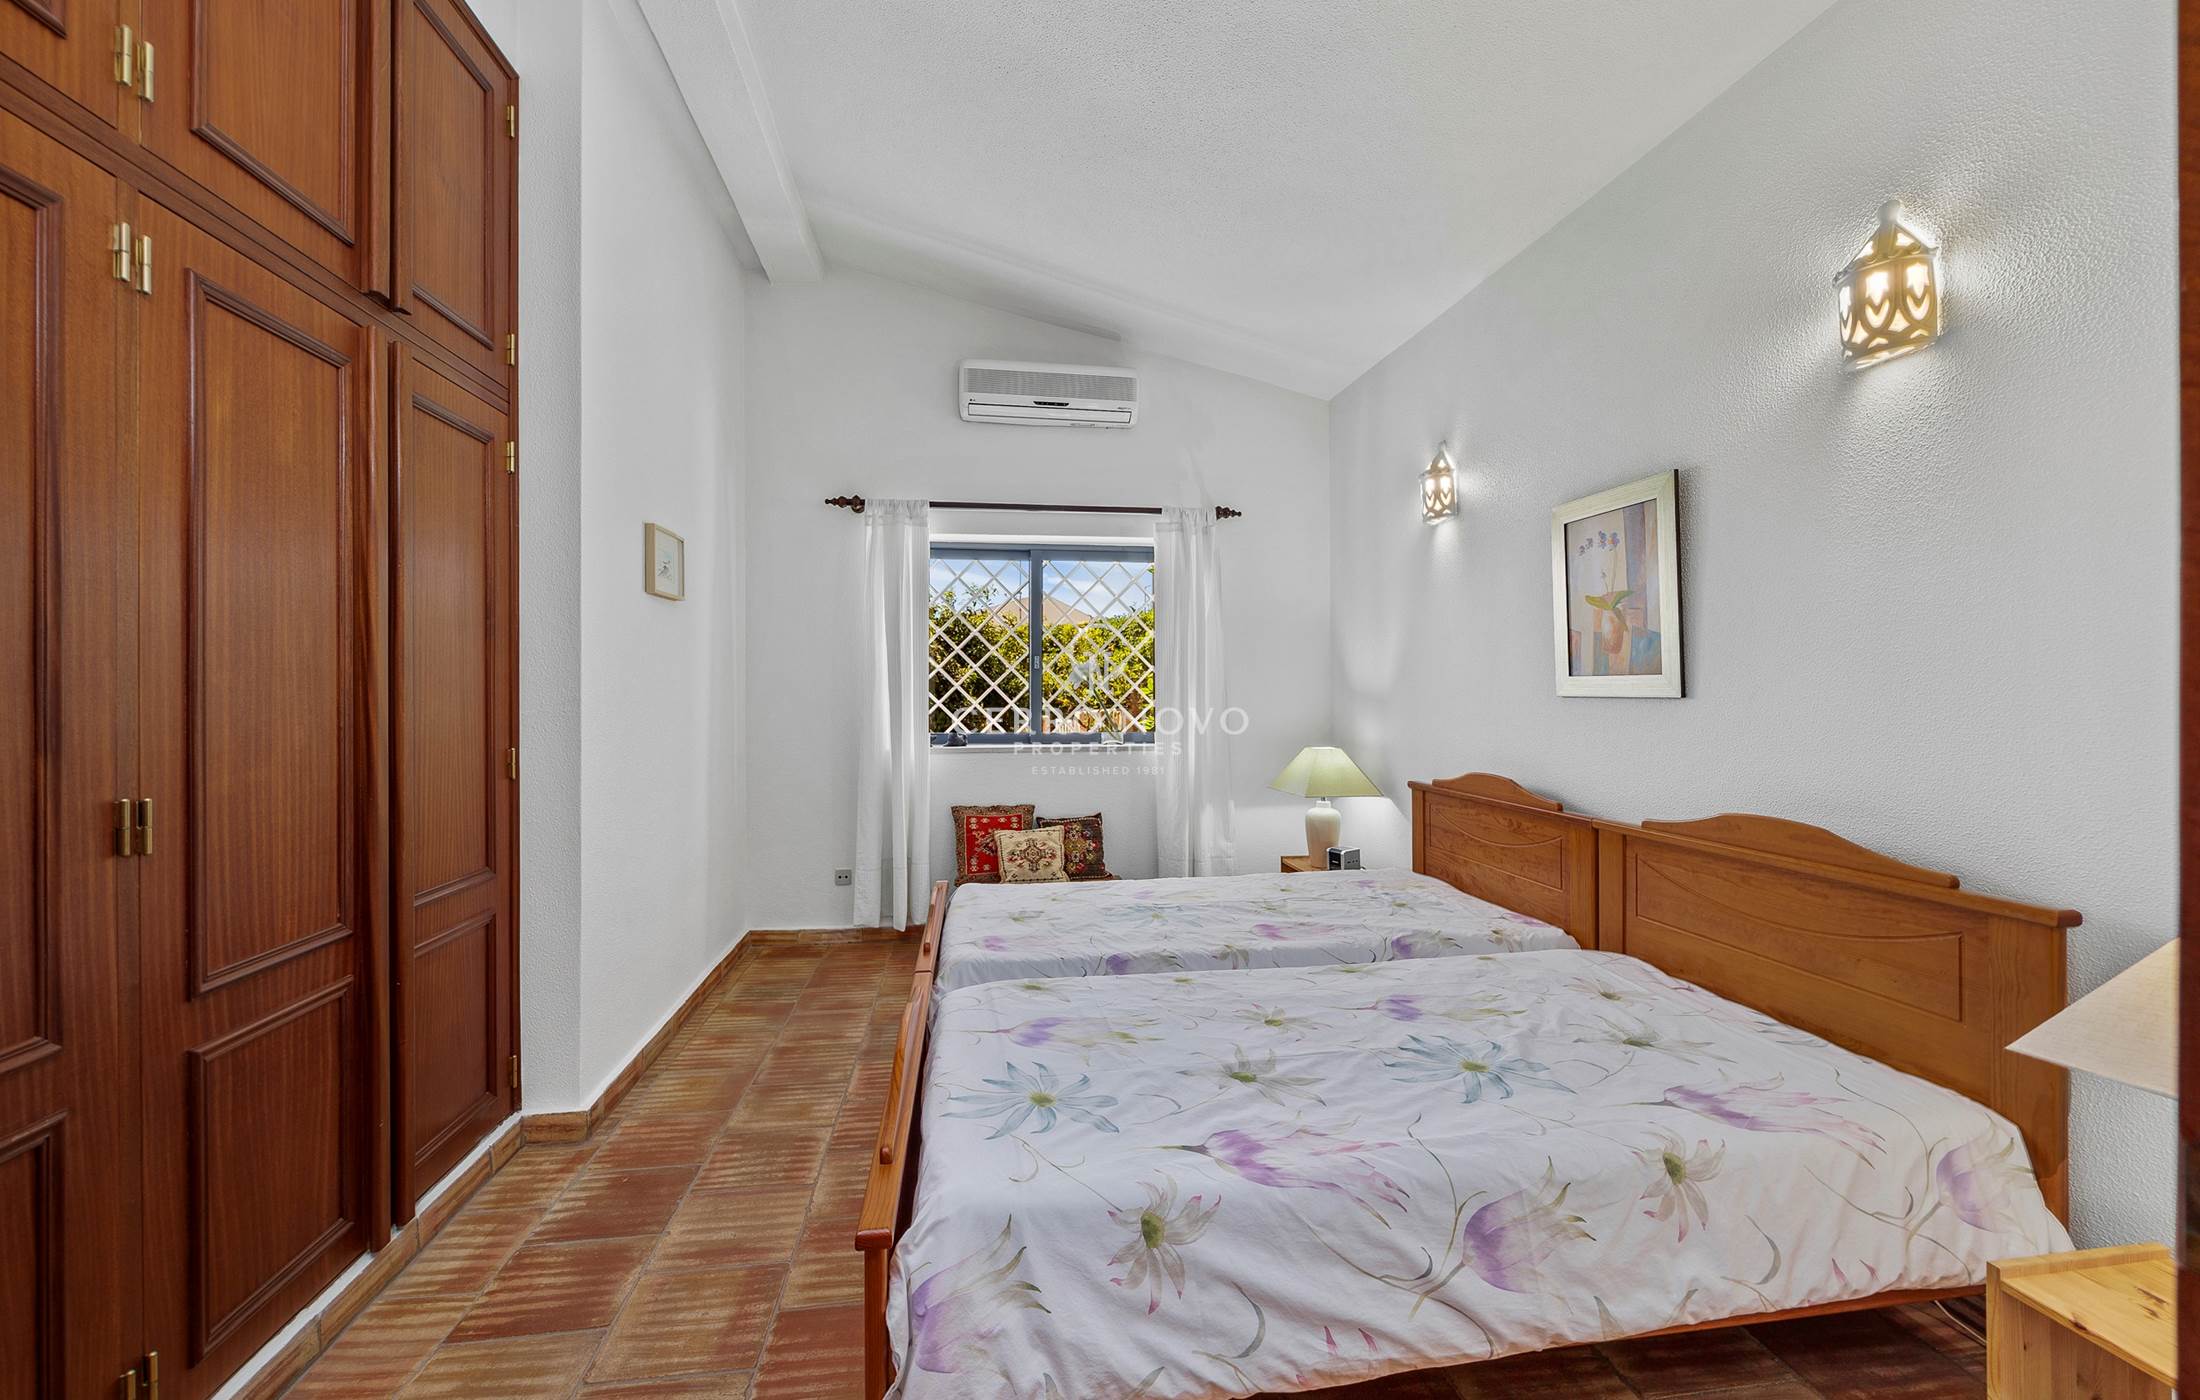 Three Bedroom detached villa in Albufeira’s new town